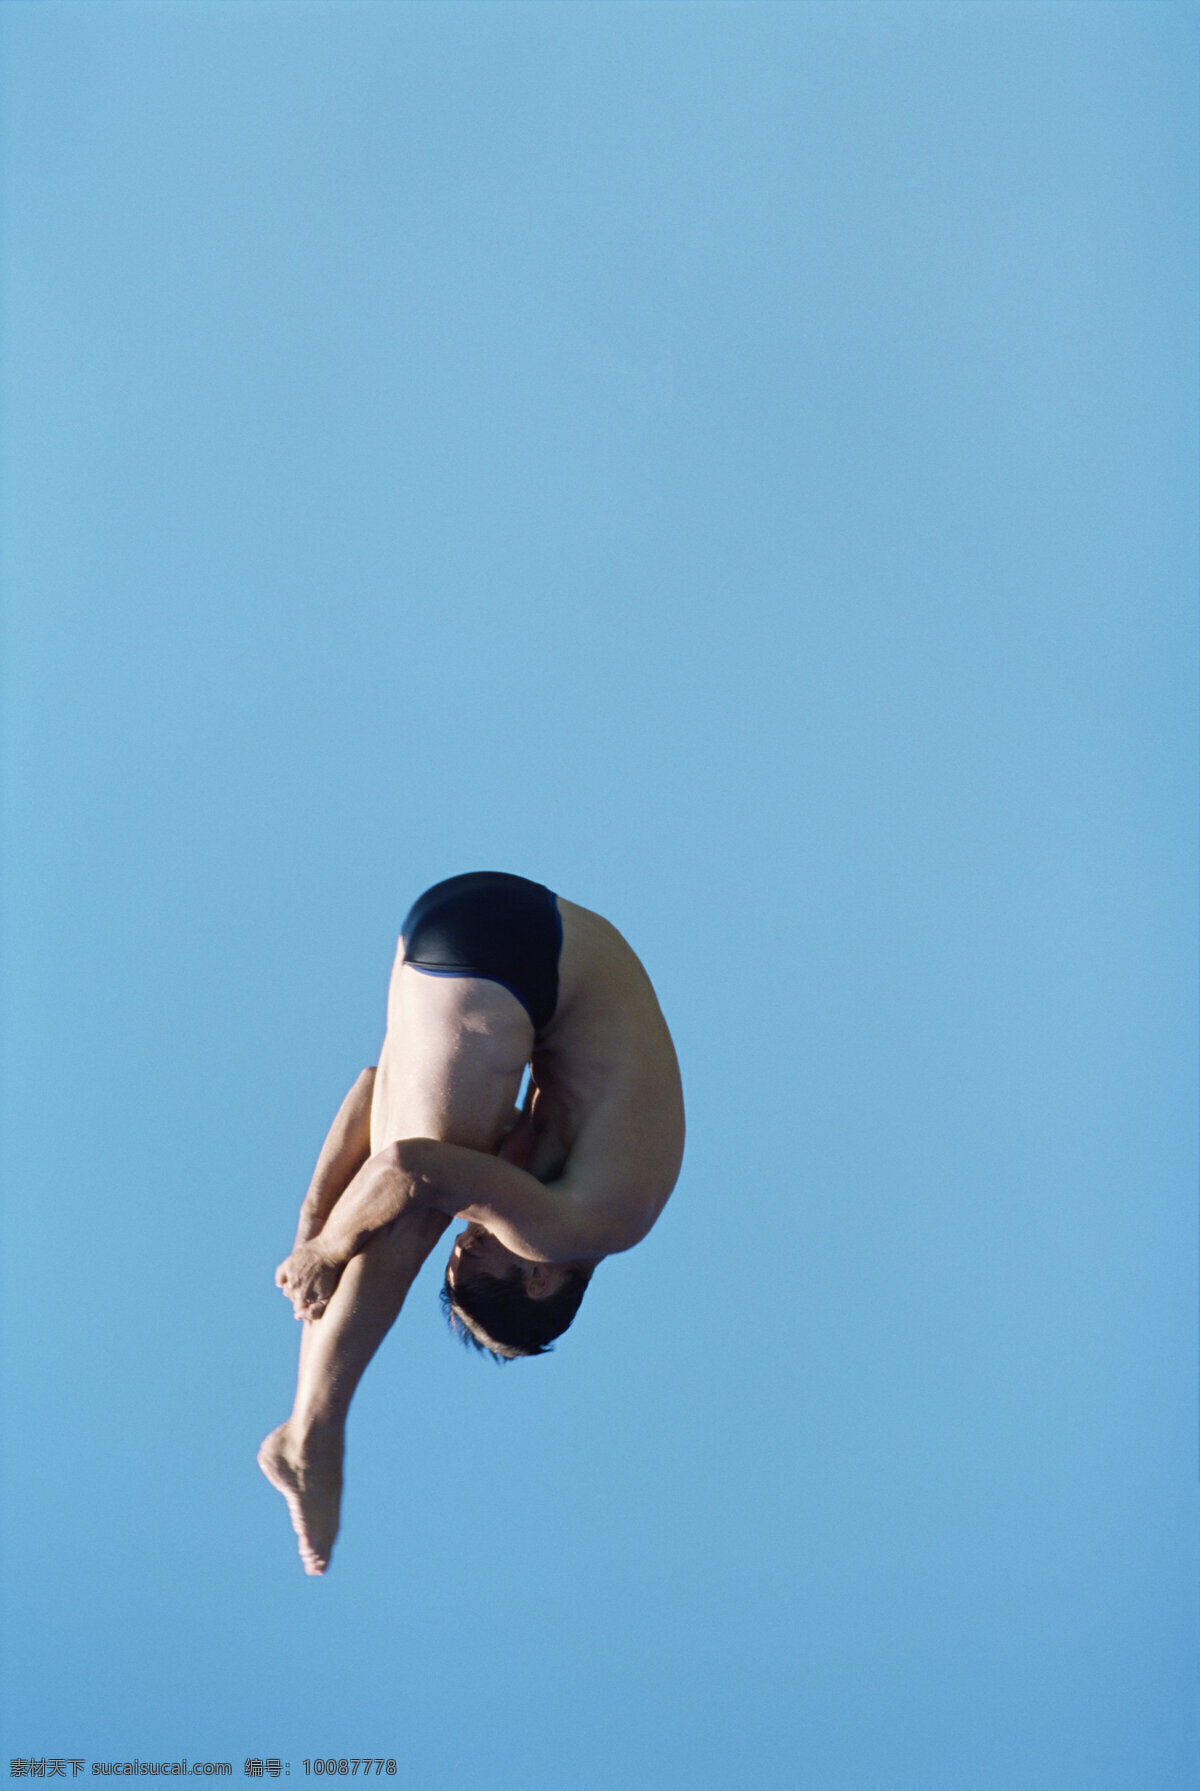 跳水 运动员 体育运动 体育项目 奥运会 奥林匹克运动会 跳水运动员 生活百科